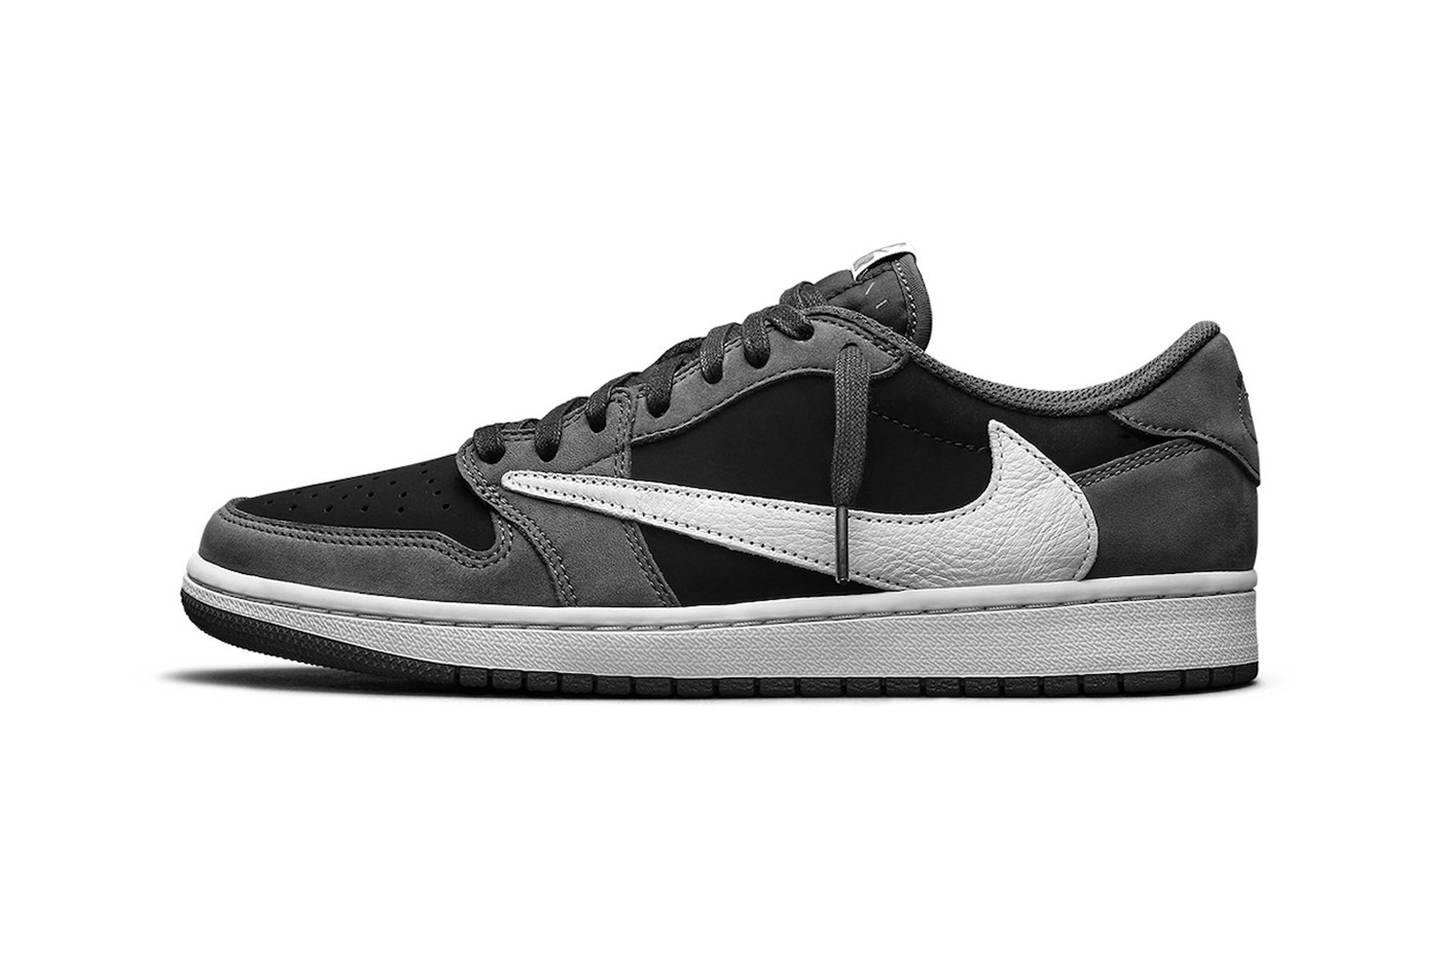 Las zapatillas Travis Scott x Air Jordan 1 Low OG Black Phantom marcan un nuevo modelo tras el retorno del vínculo entre el rapero y Nike, luego de los trágicos hechos de Astroworld.